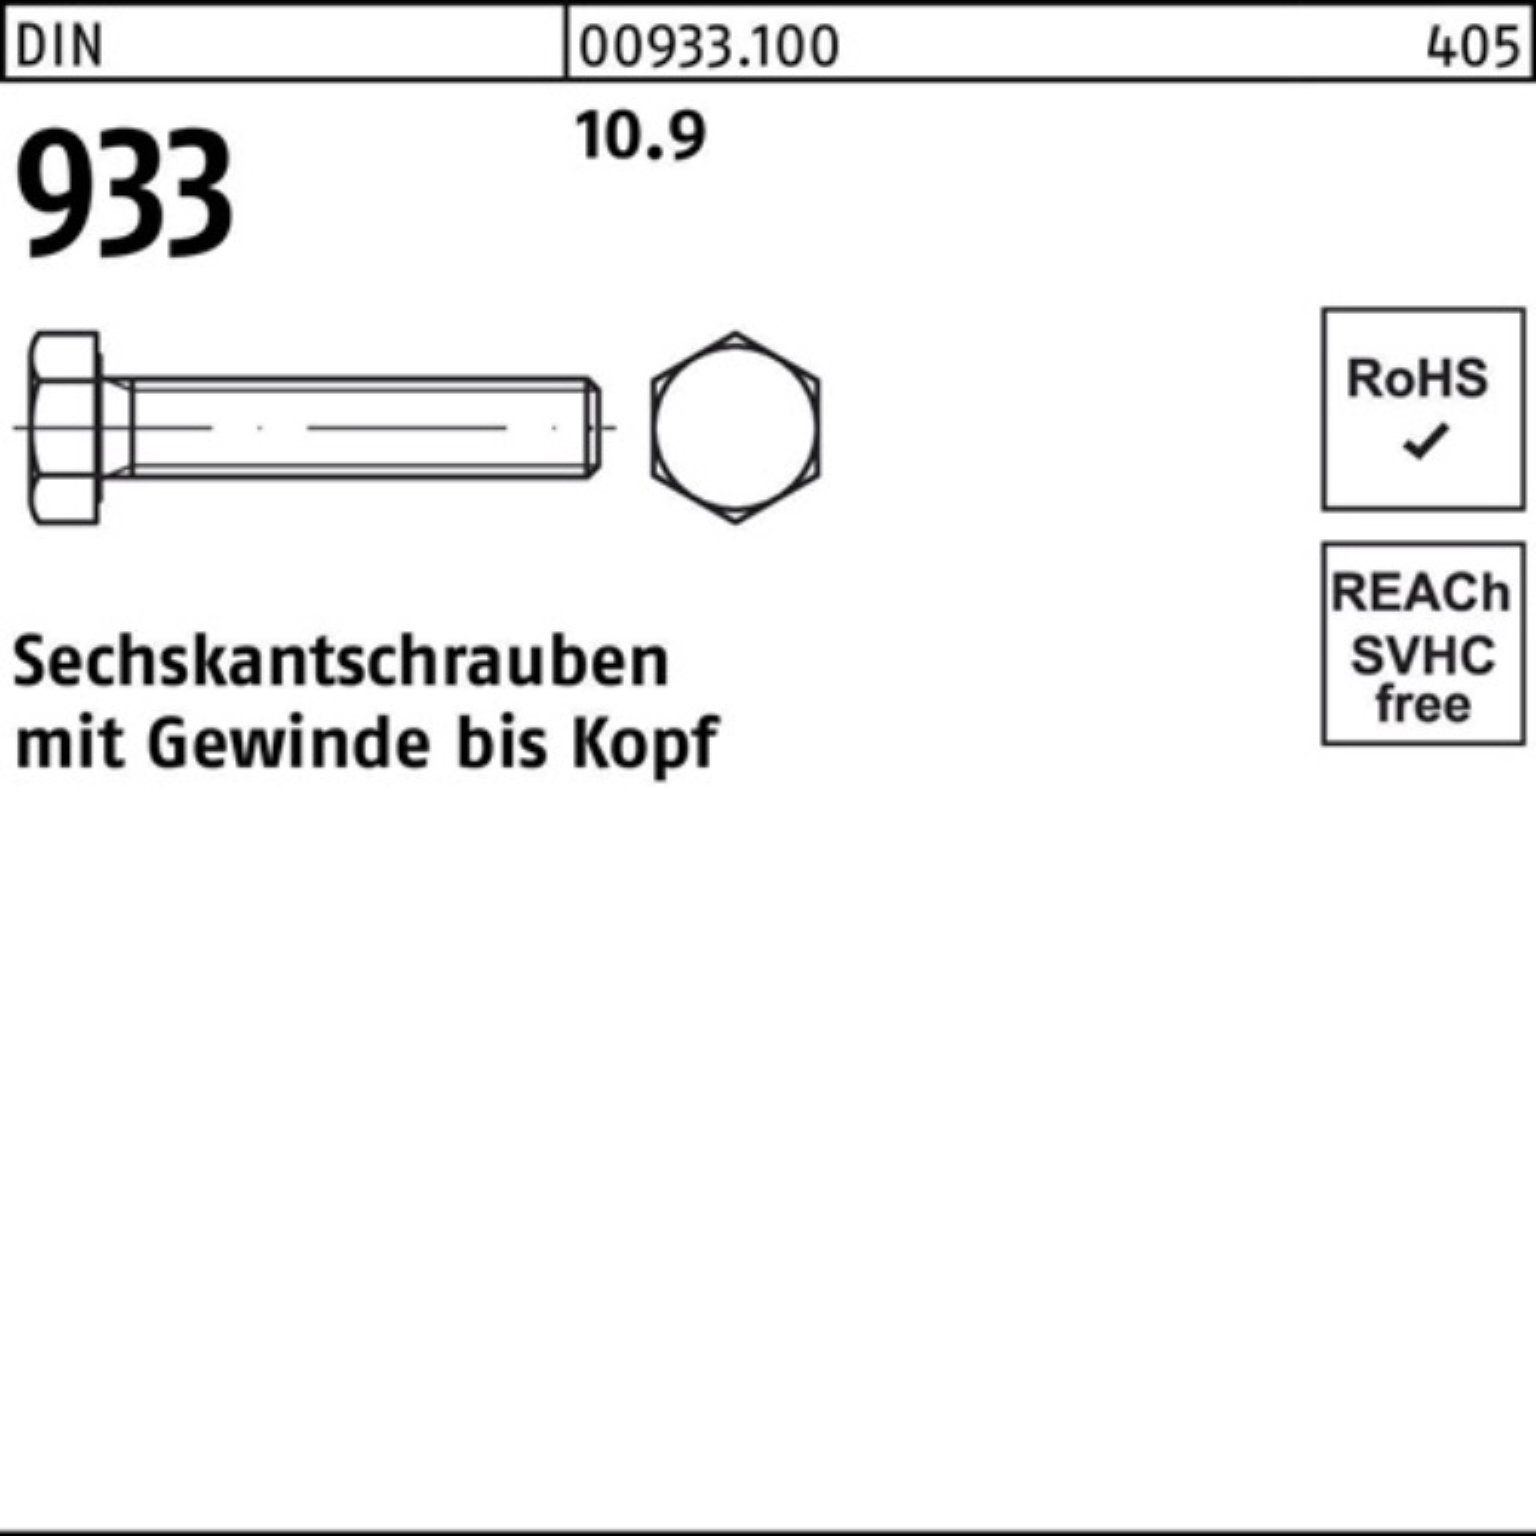 Sechskantschraube Reyher DIN Stück 10.9 VG 933 933 Pack Sechskantschraube 200er M8x DIN 75 200